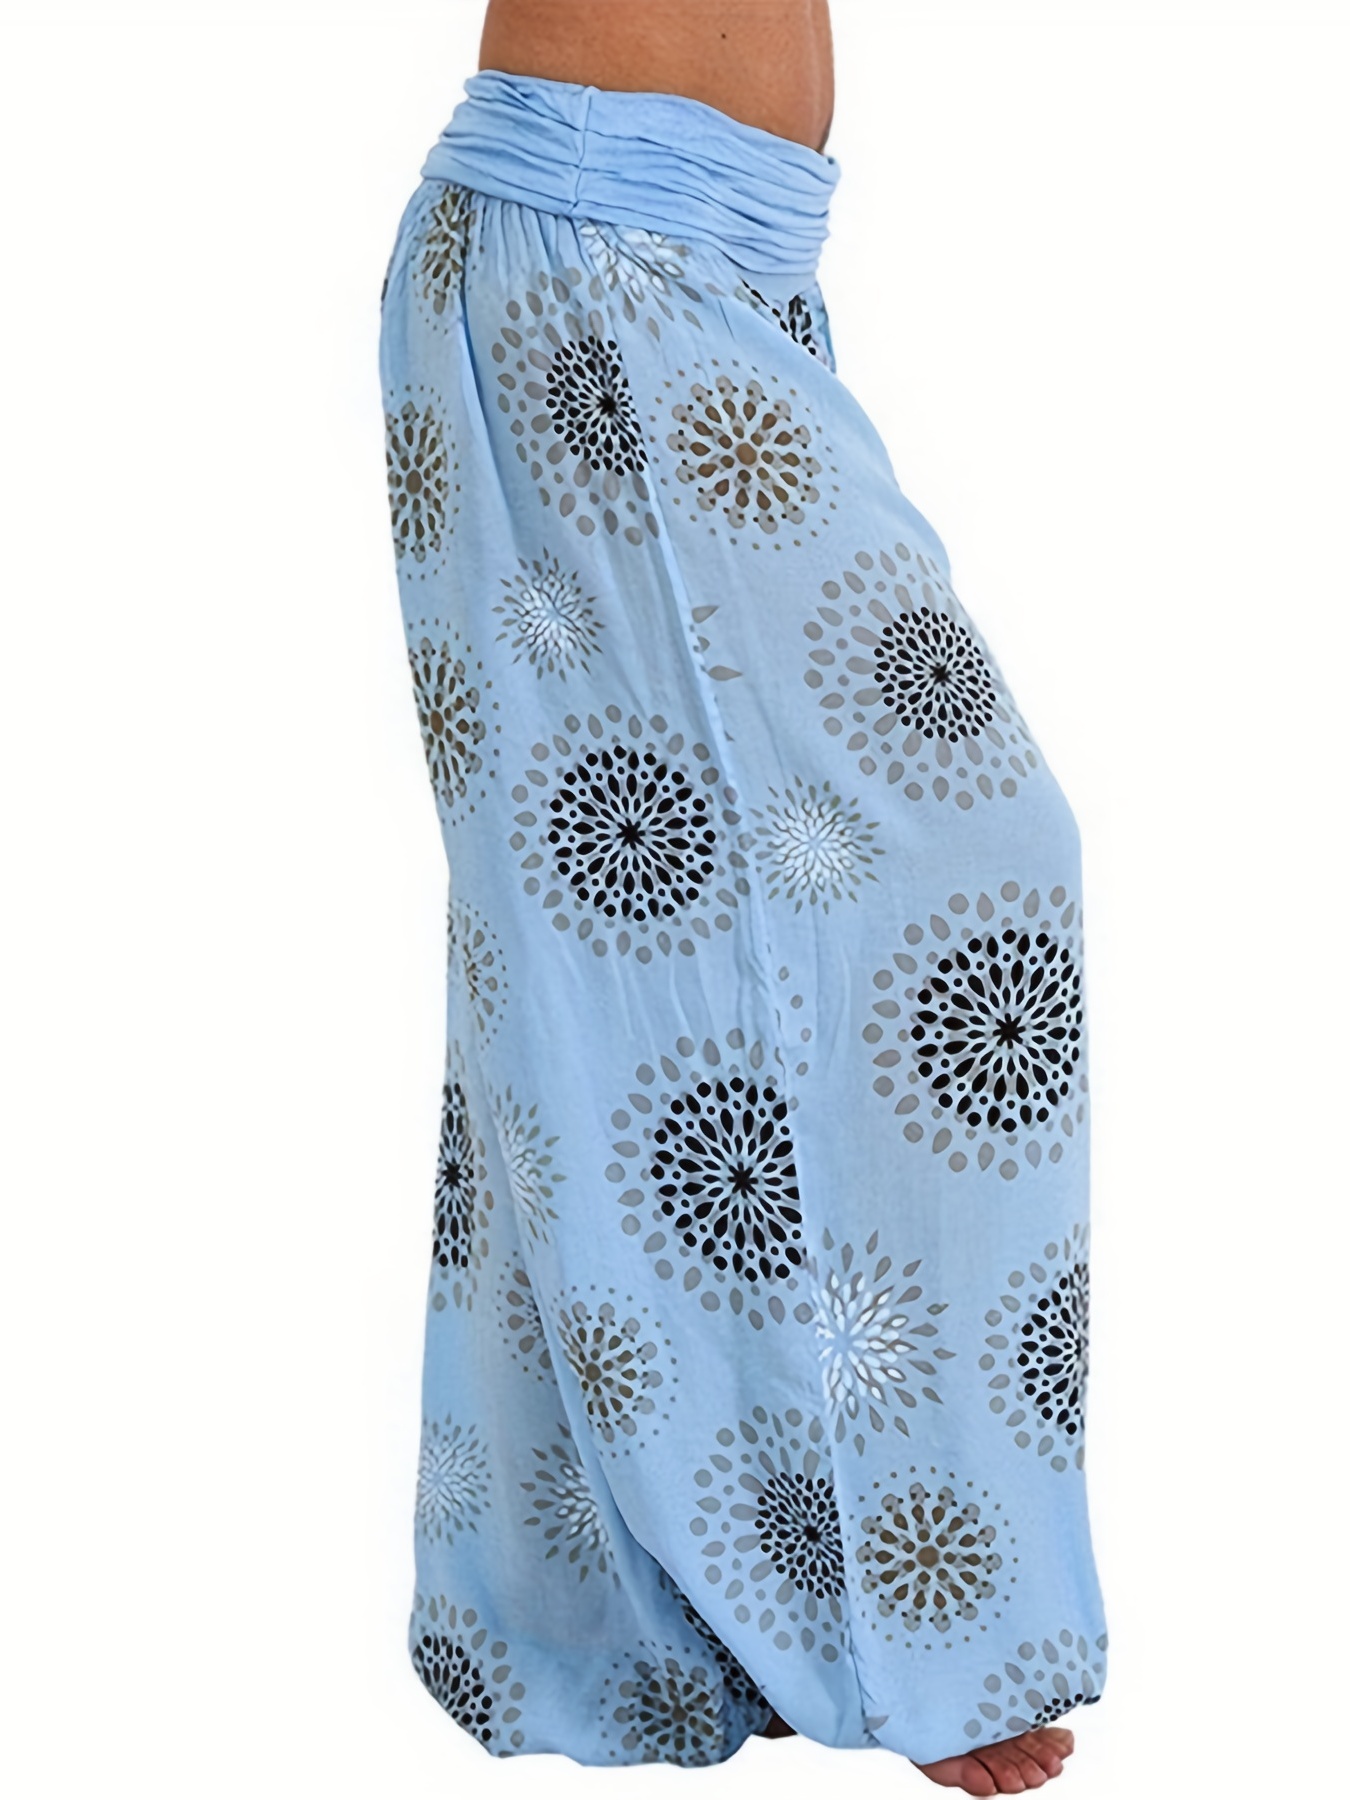 Boho Shirred Waist Drop Crotch Blue Patterned Harem Pants – Los